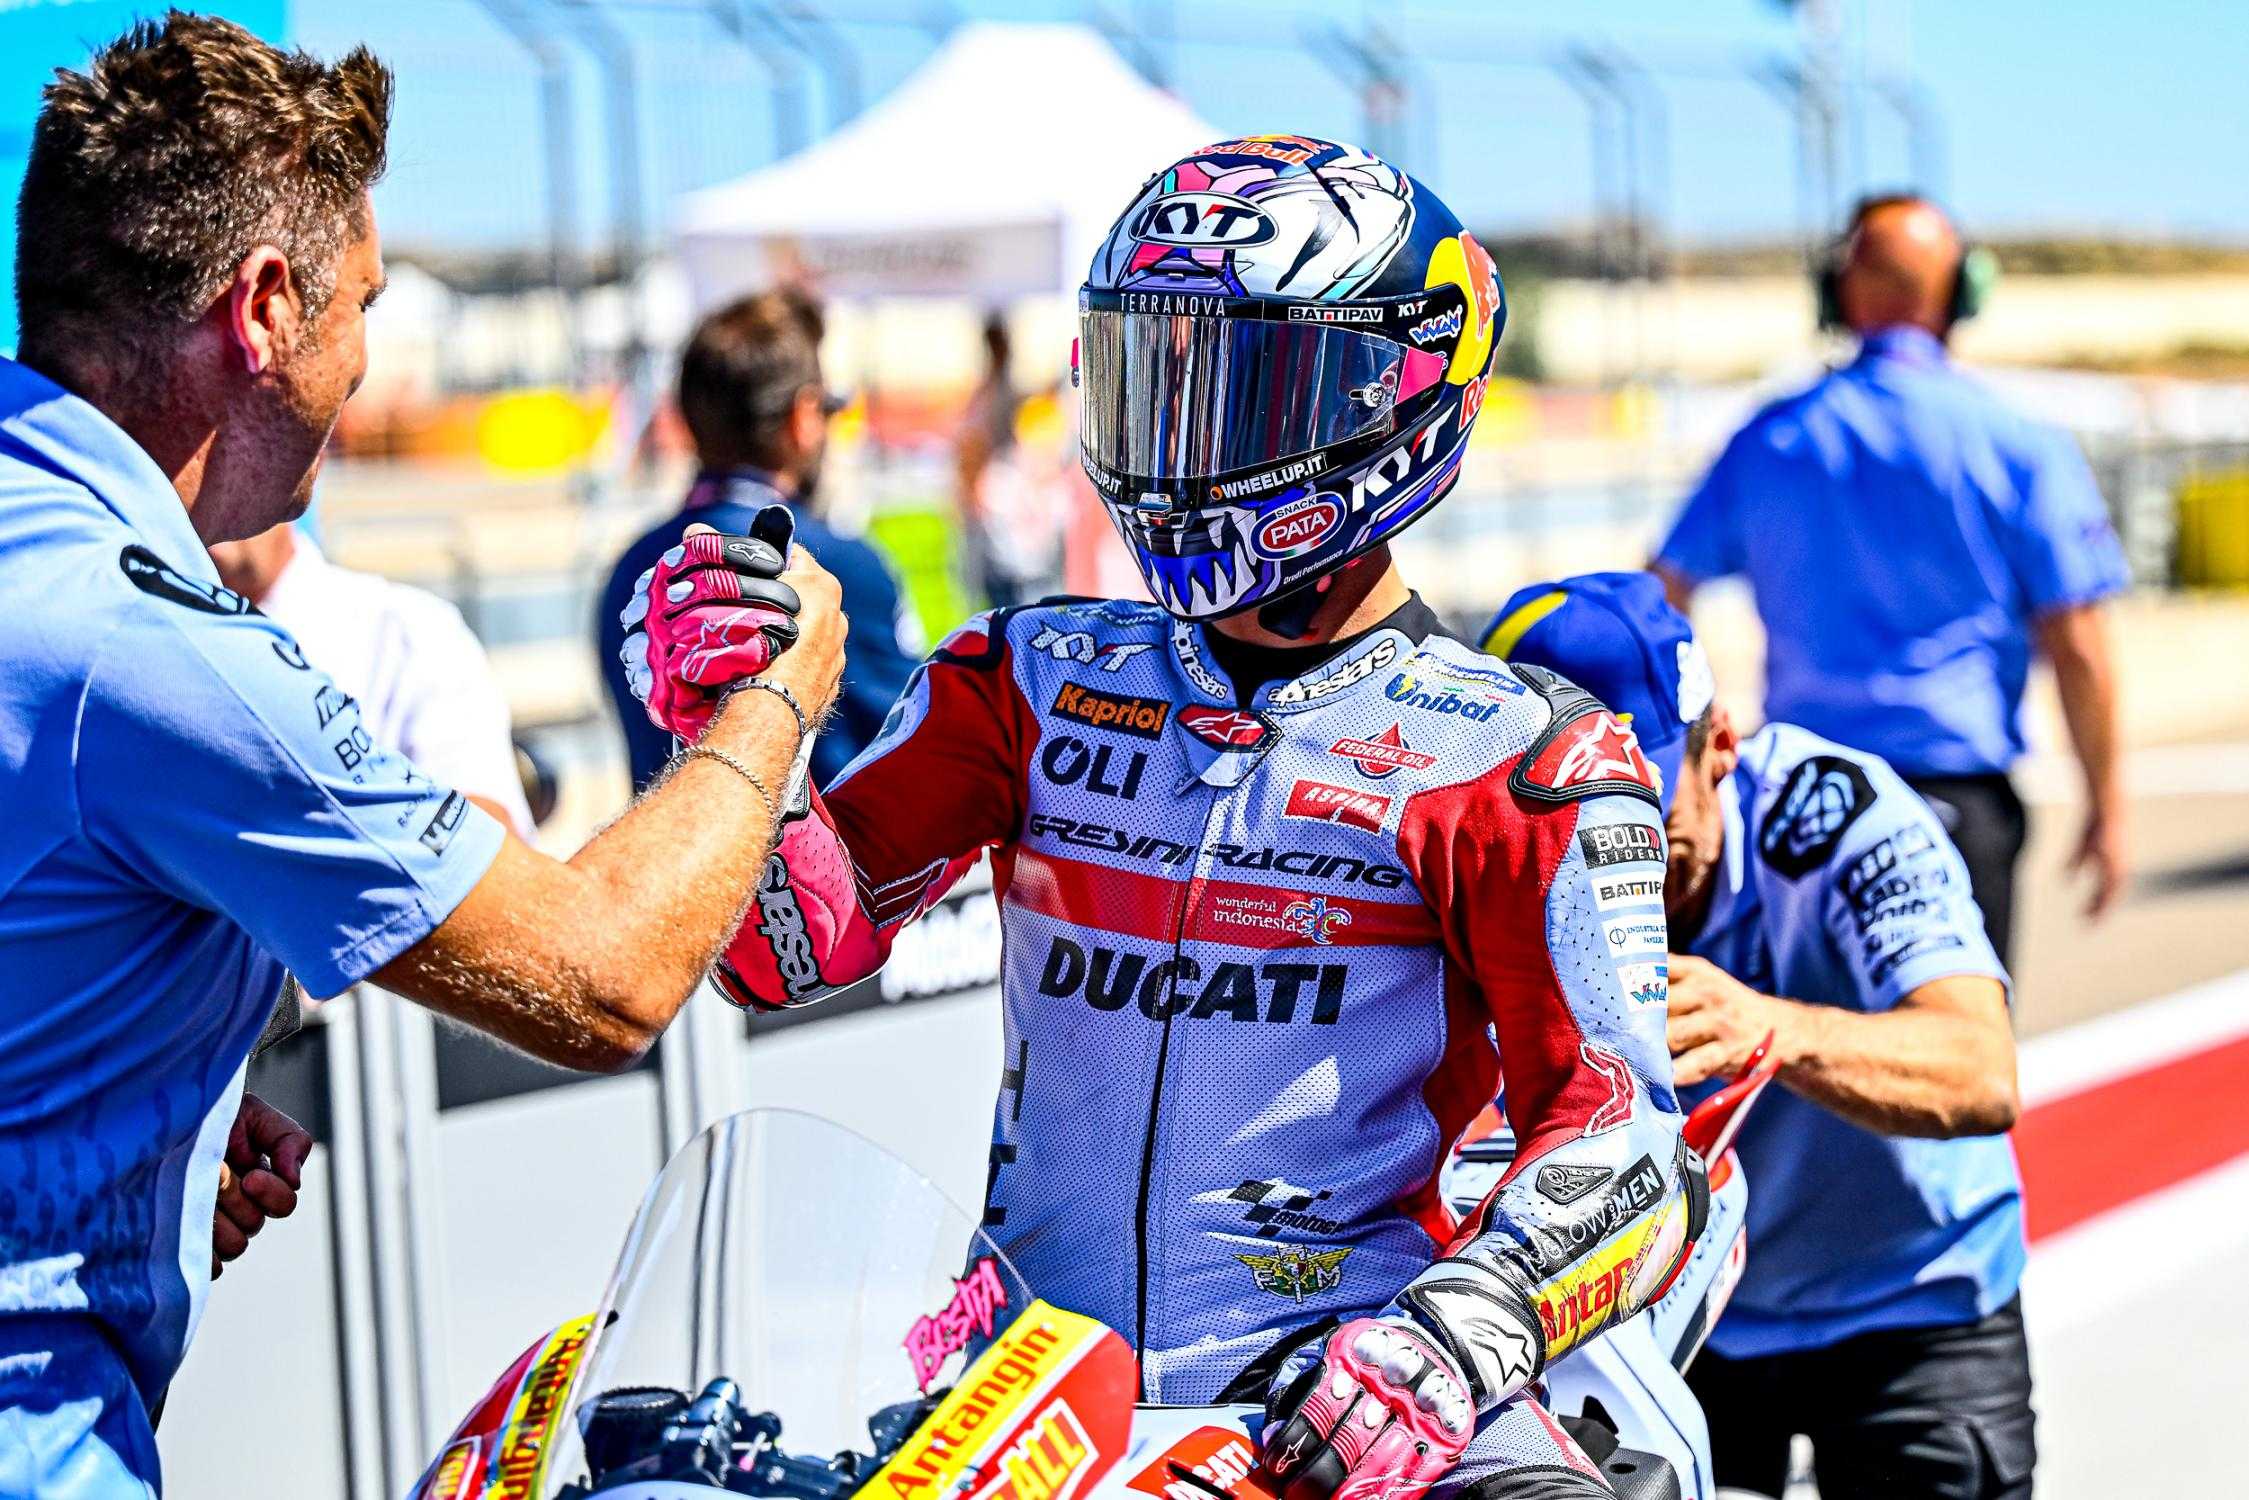 « J'espère avoir dissipé les doutes » : Ducati, le mérite plutôt que les consignes